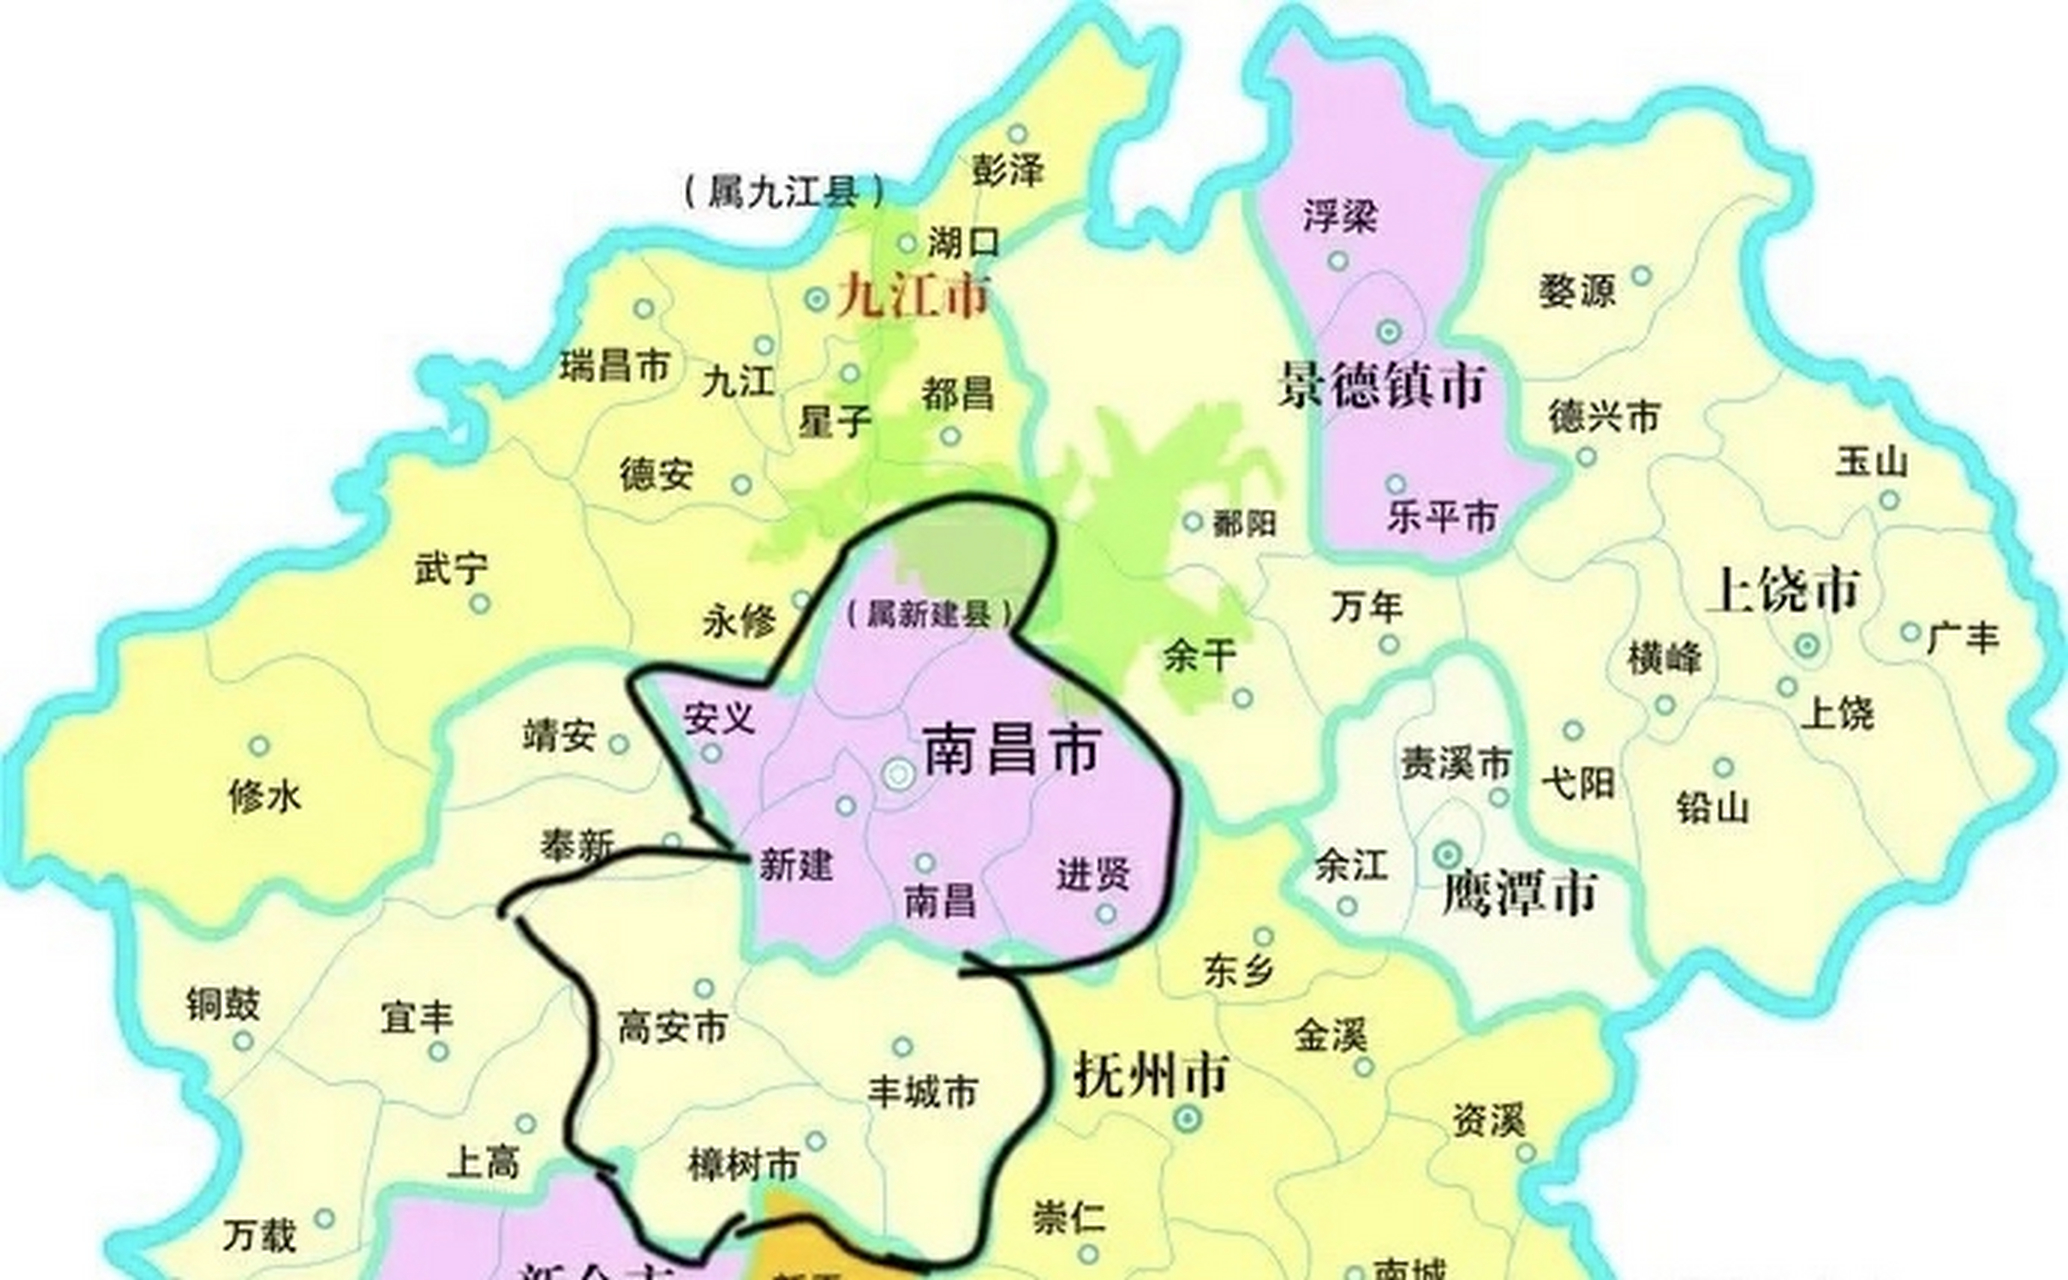 南昌是江西省的省会,总面积7402平方公里,总人口660万